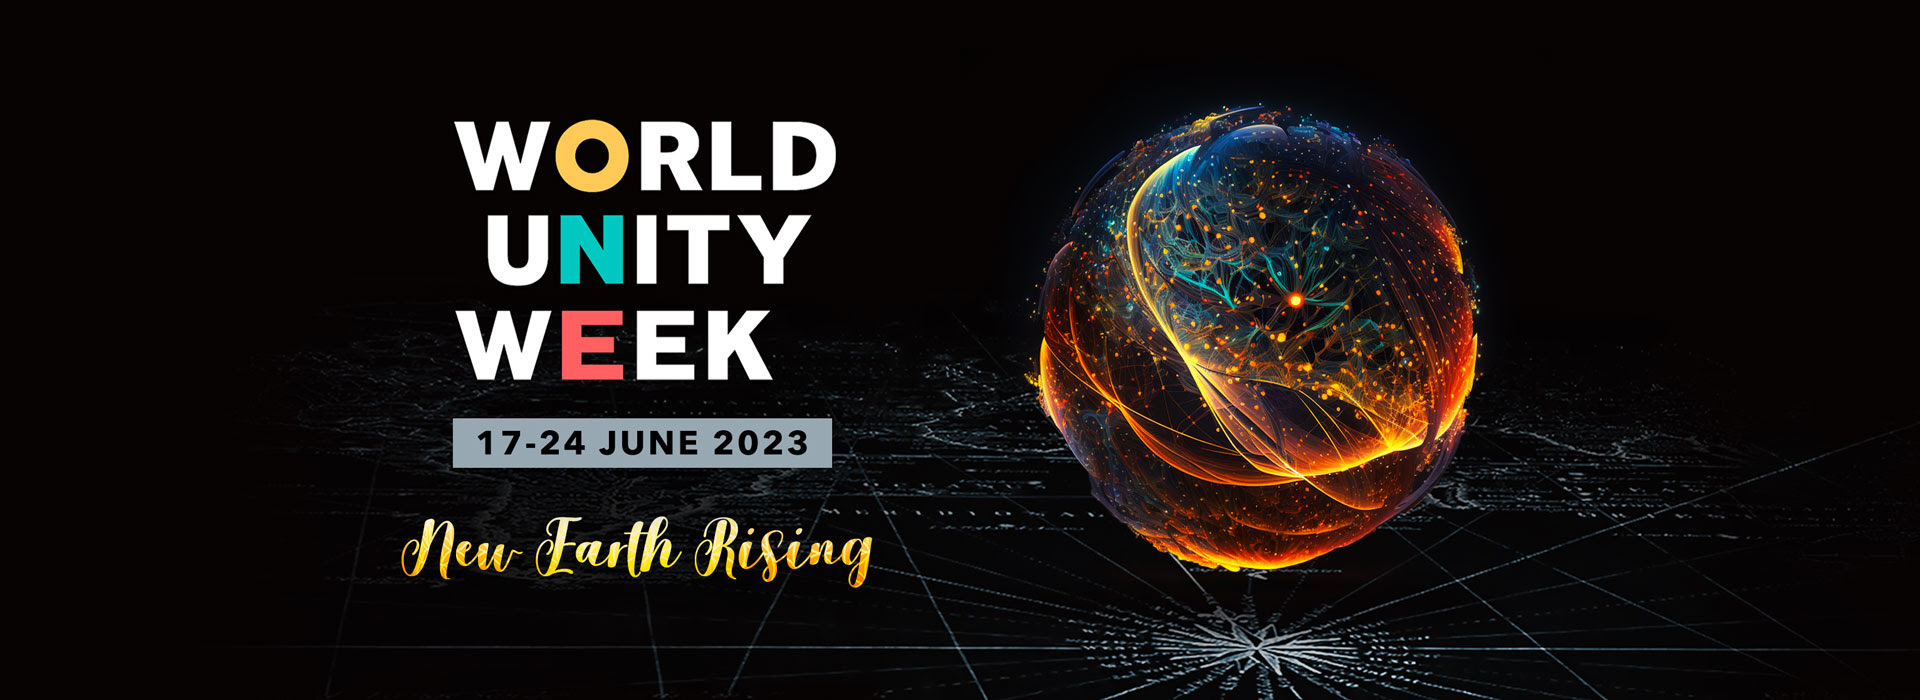 Promotional Image for World Unity Week 